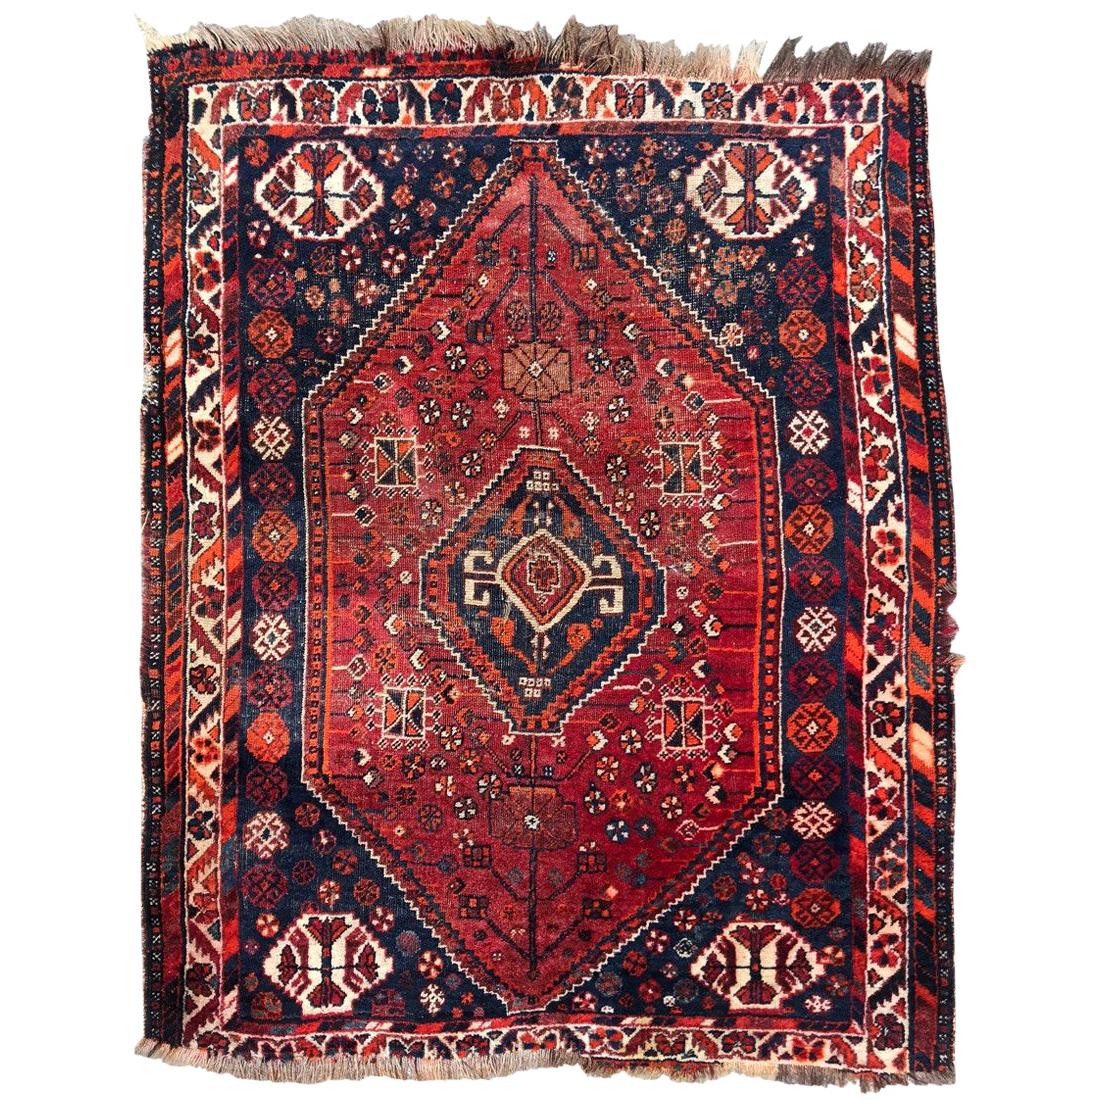 Le magnifique petit tapis Vintage Shiraz de Bobyrug